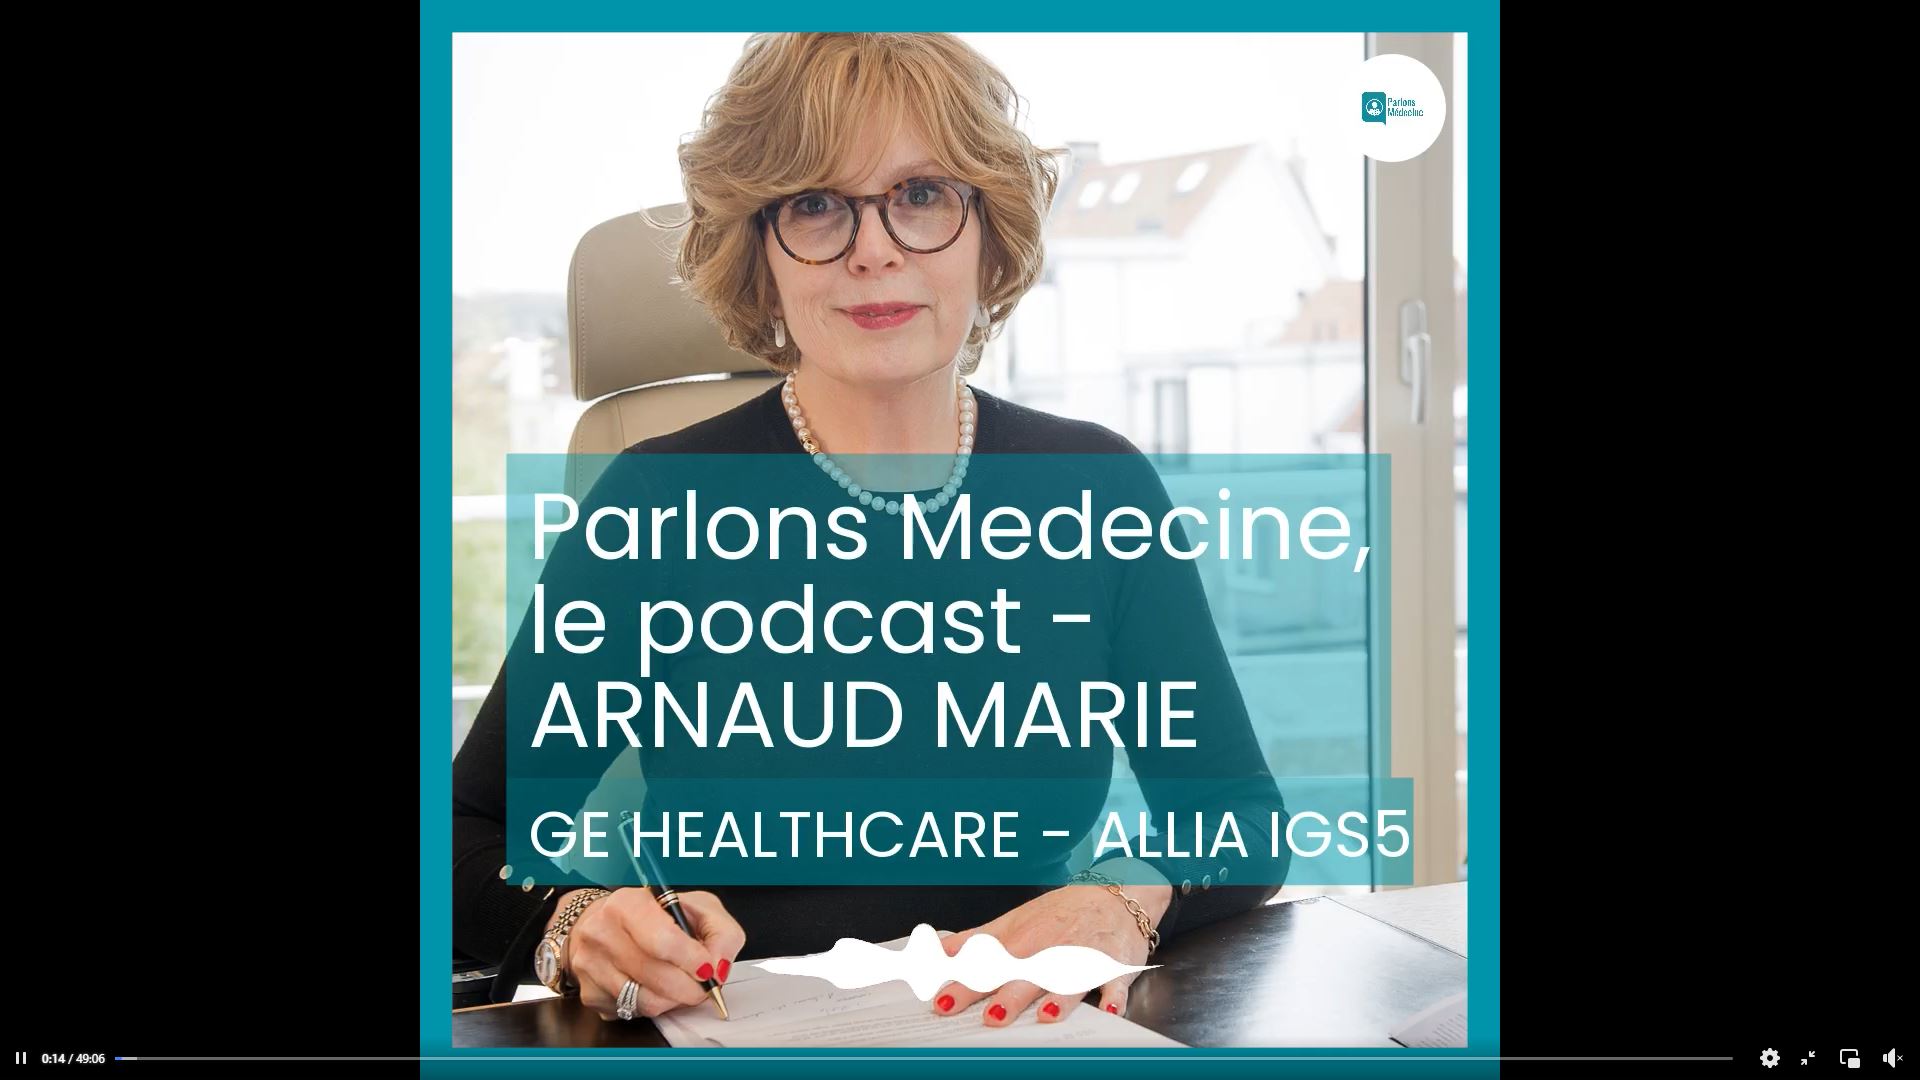 Passage de Arnaud Marie, DG de la division interventionnelle de GE HEALTHCARE, dans le podcast « Parlons Médecine »